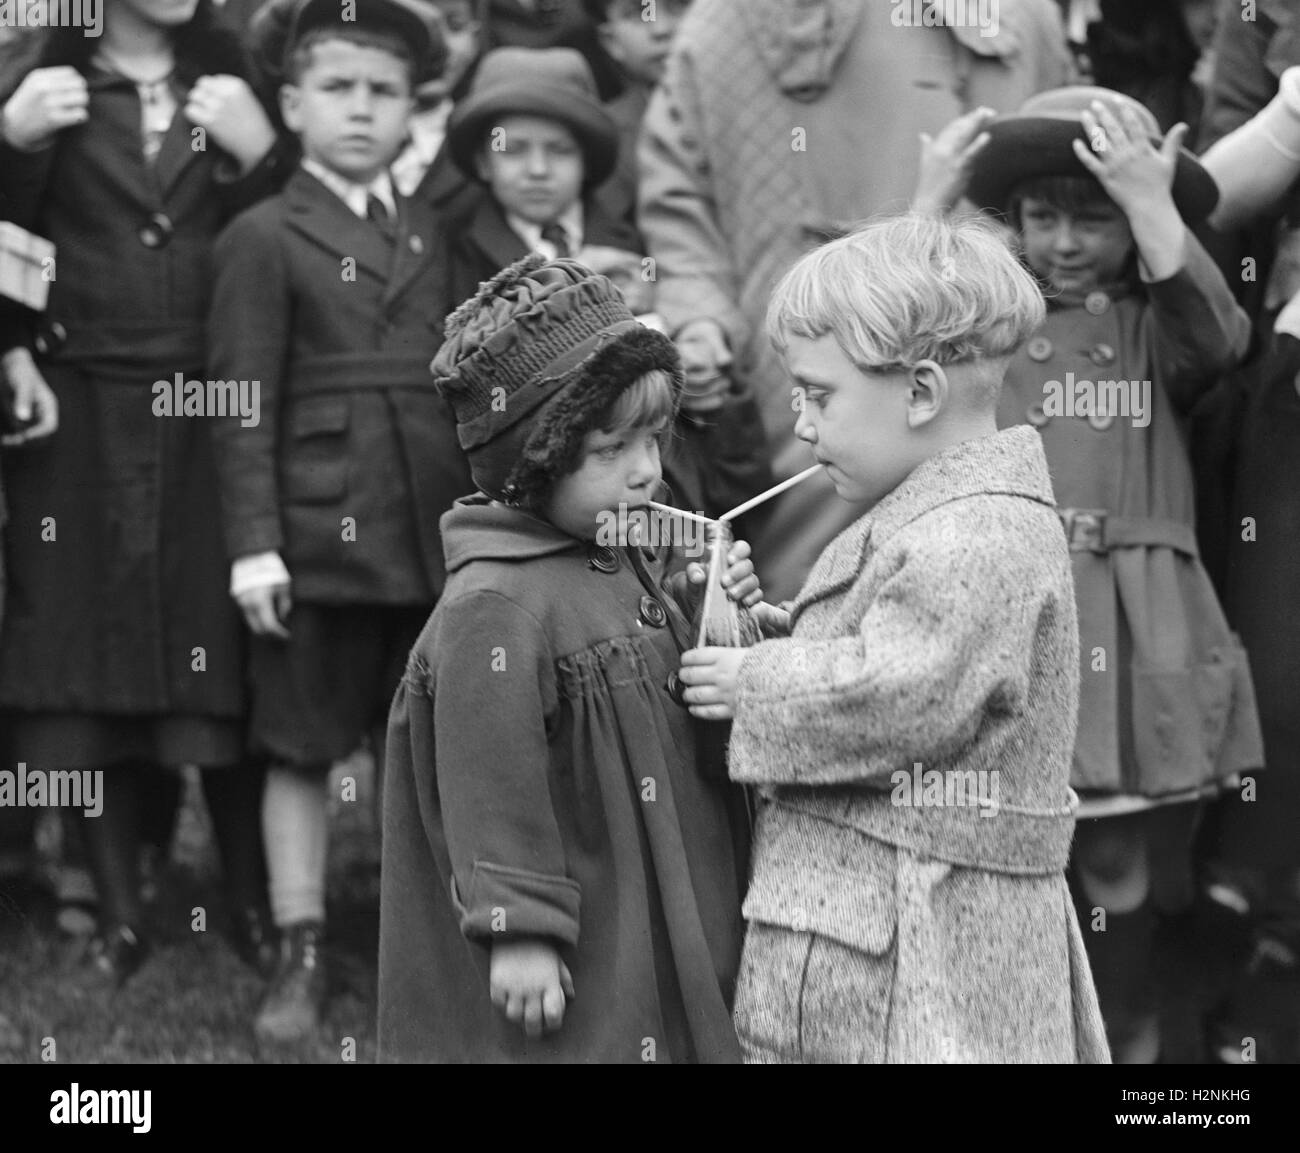 Deux enfants boire, Washington DC, USA, National Photo Company, mars 1922 Banque D'Images